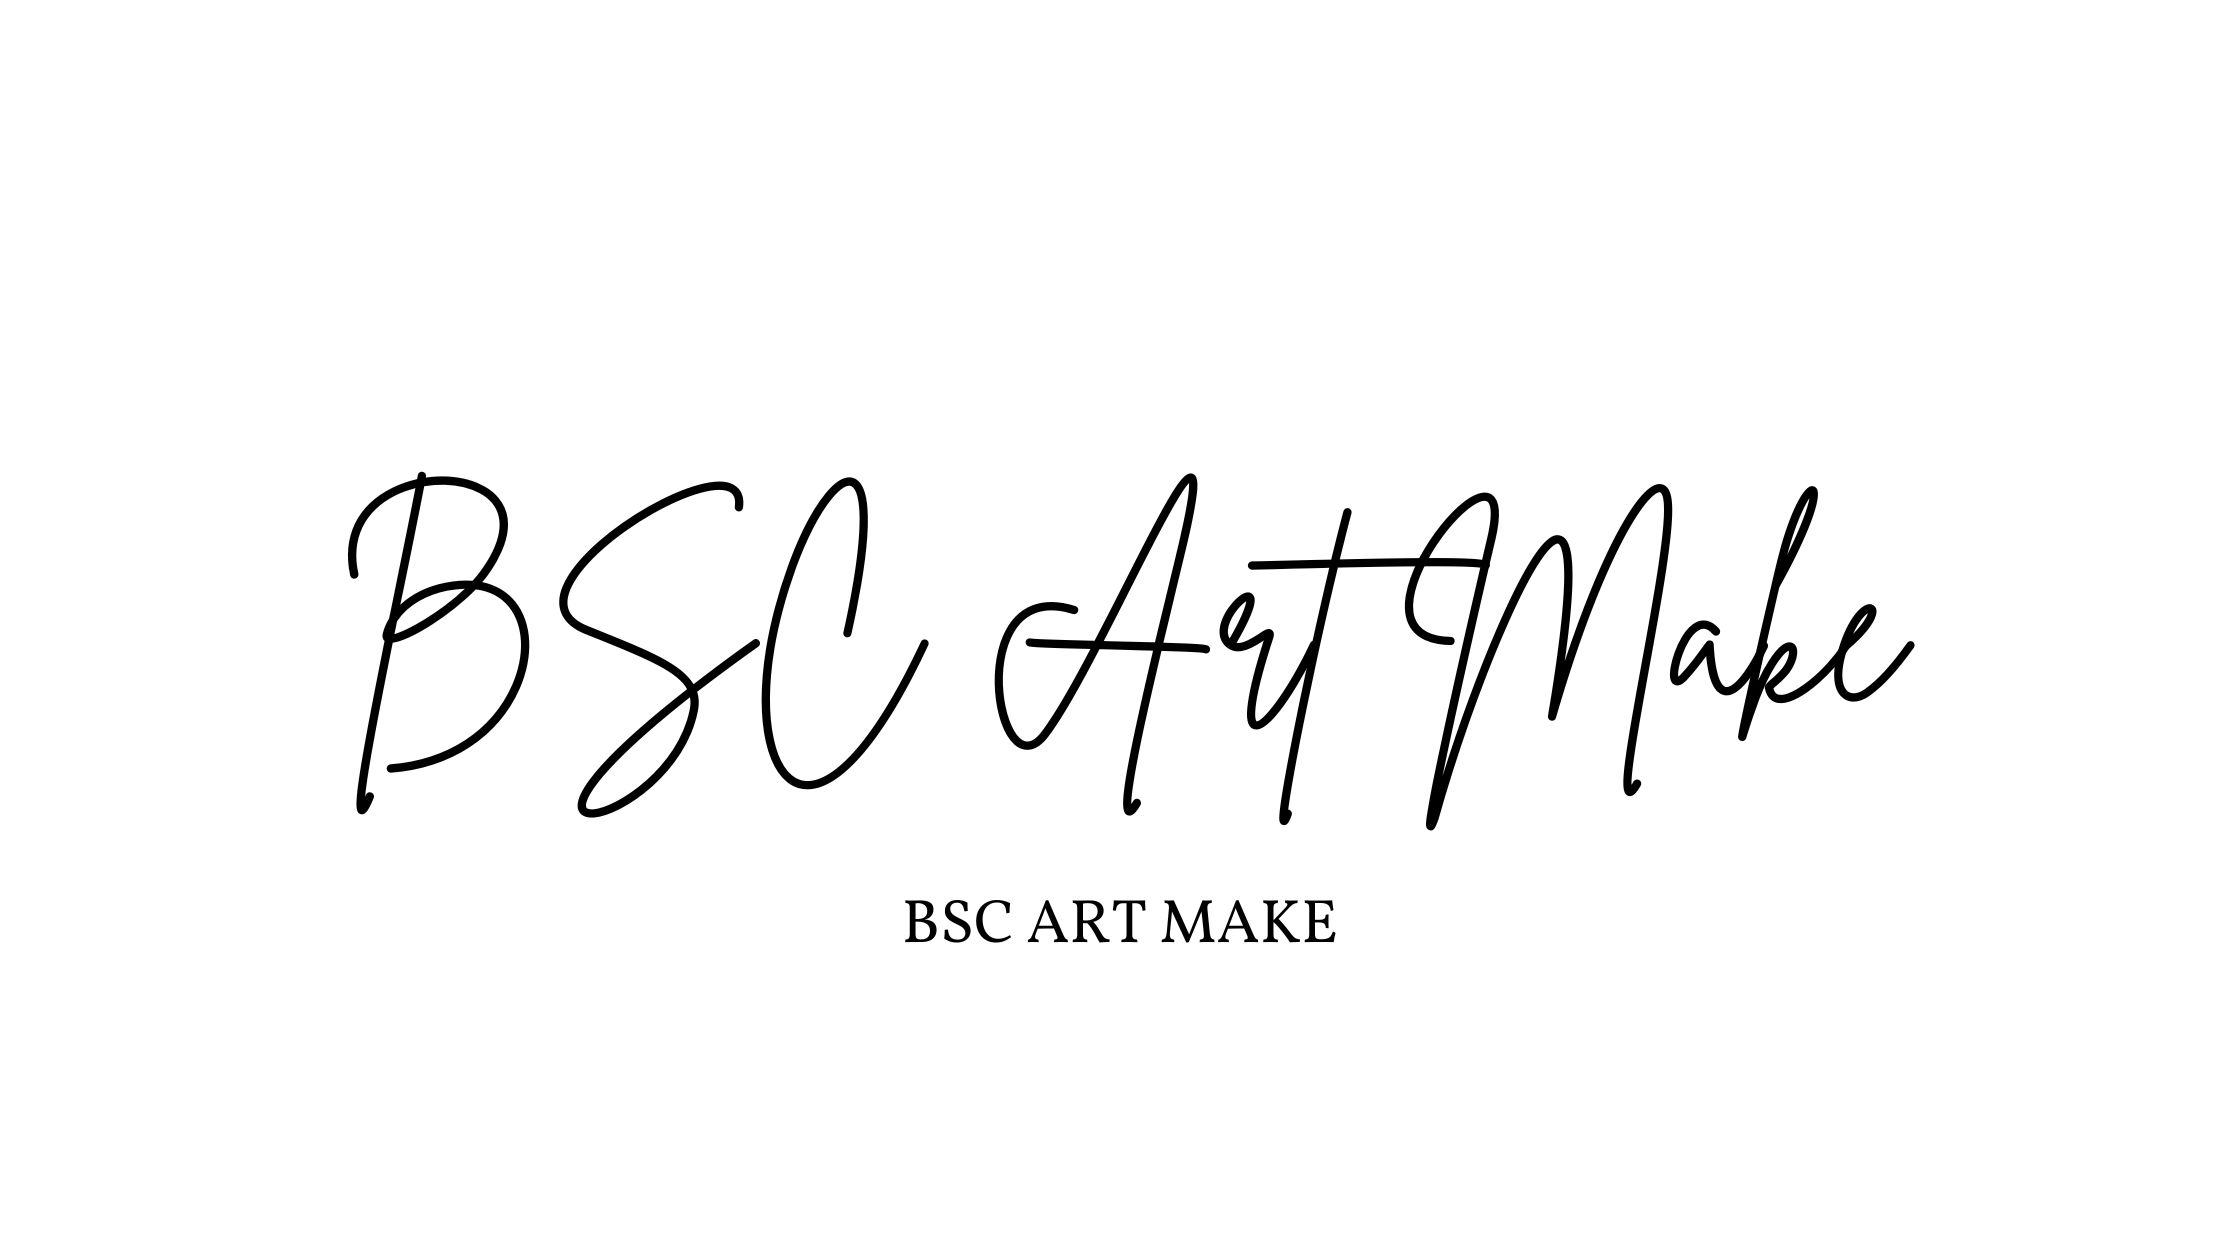 BSC Art Make